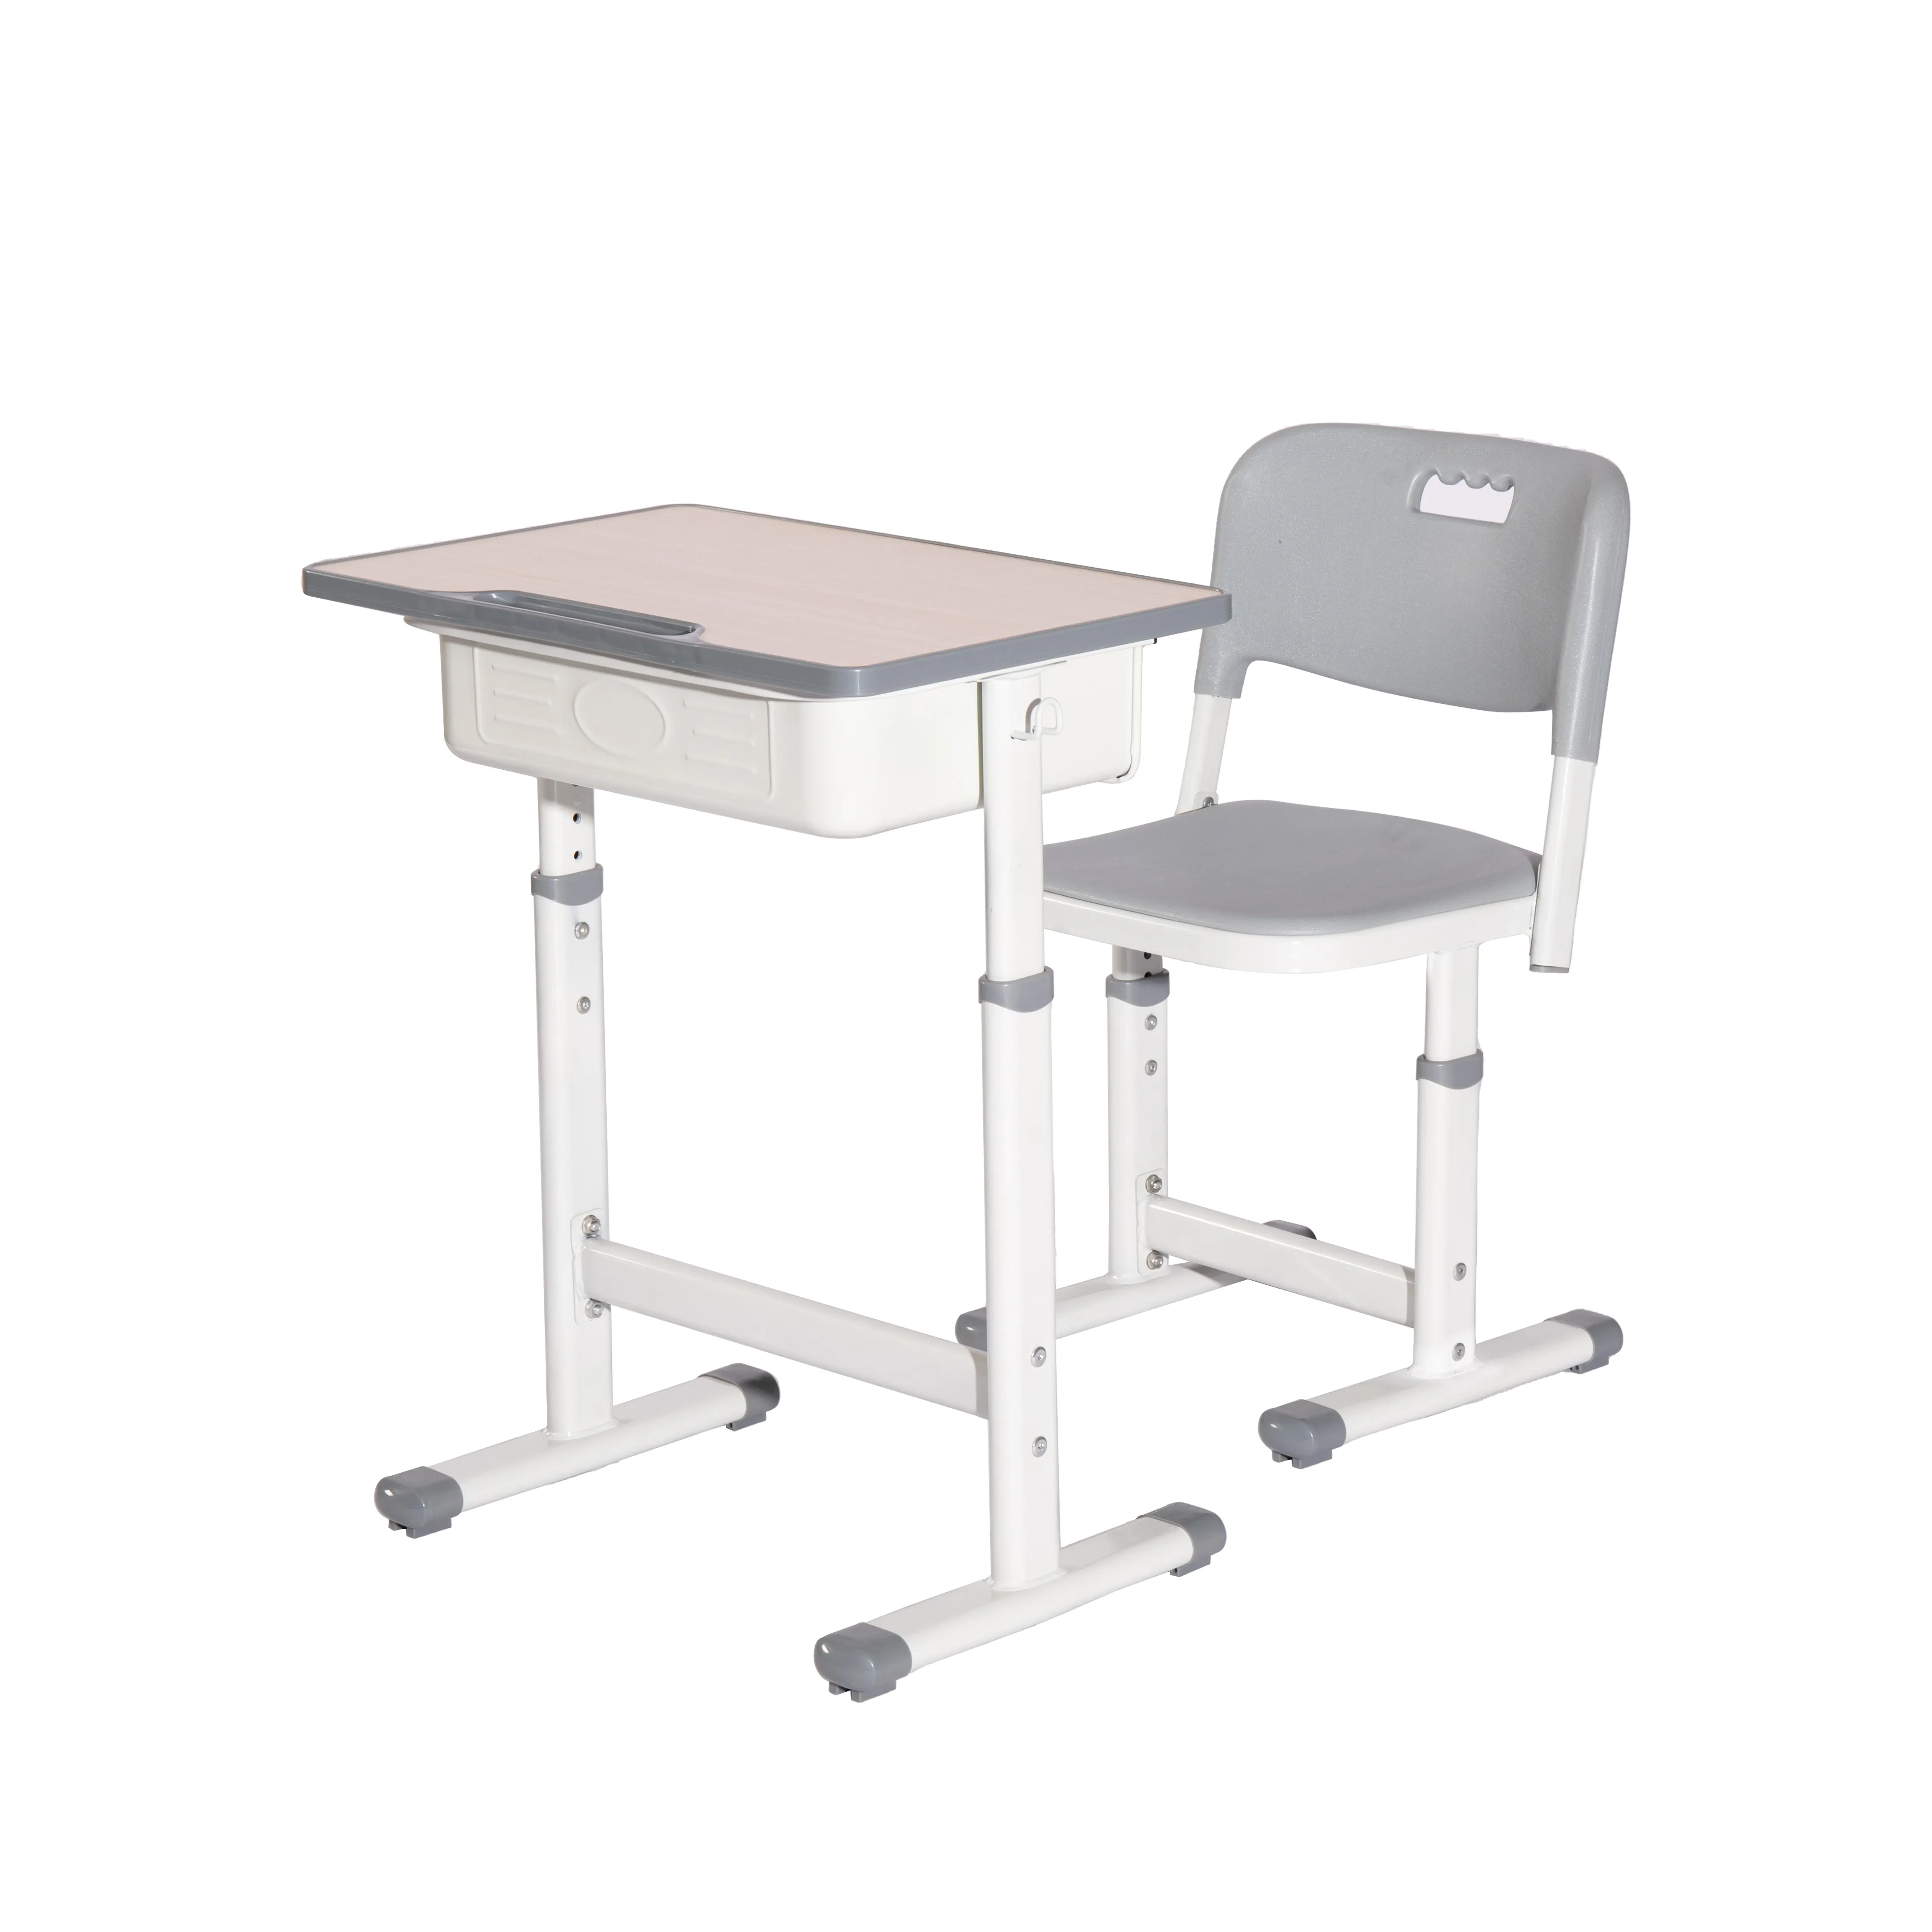 שולחנות וכיסאות מתכת מתכוונן לגובה עיצוב מודרני לבתי ספר ותכלויות ביניים ובסיבתיות